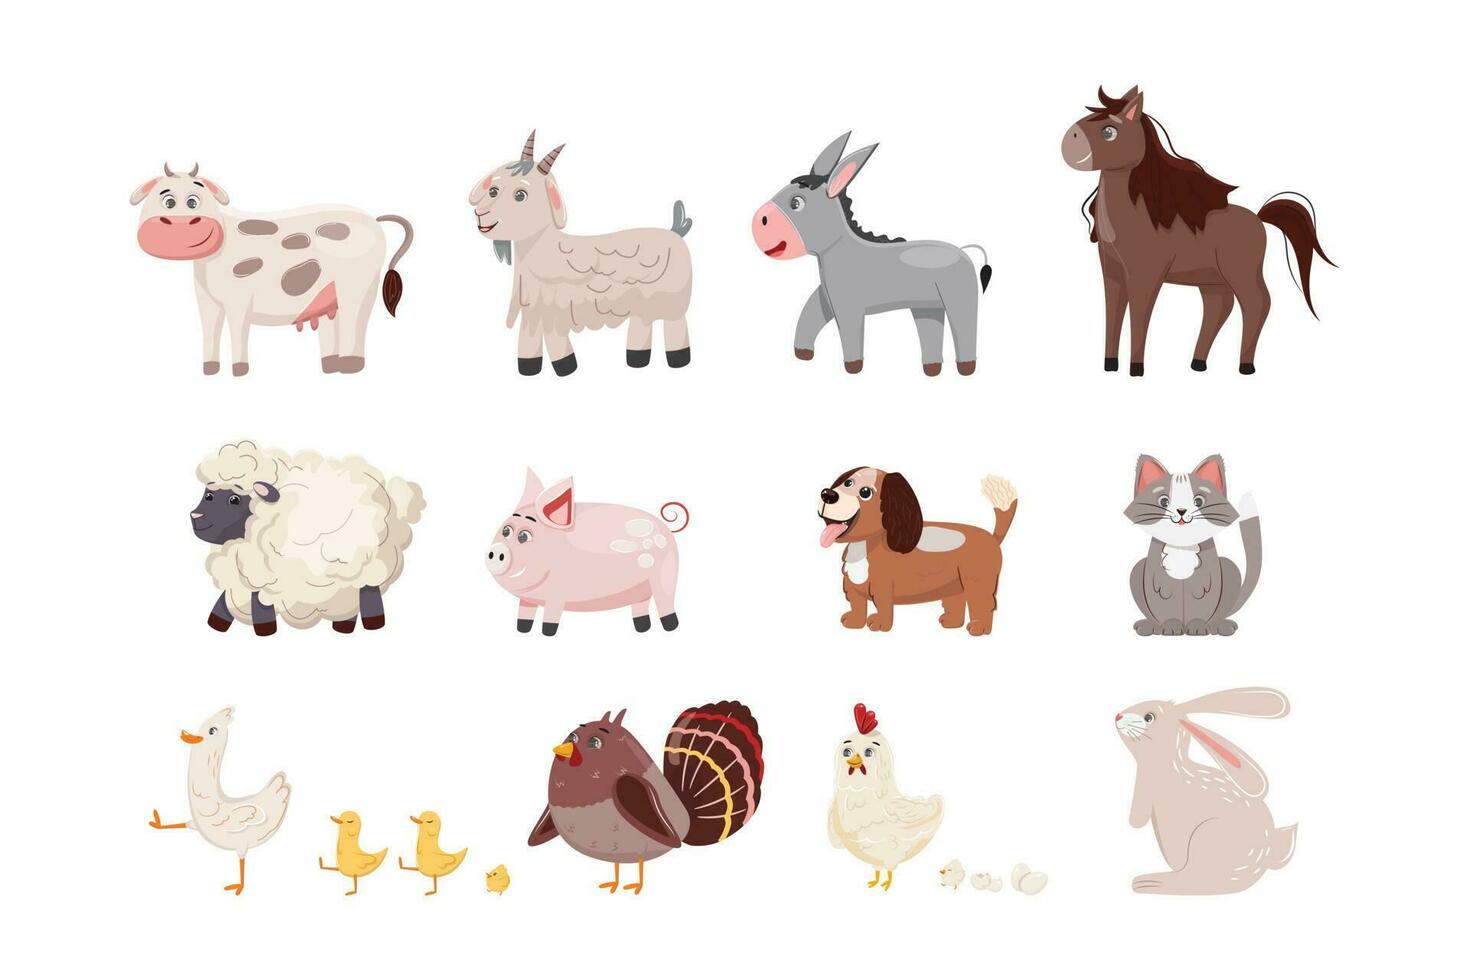 verzameling van boerderij dieren Aan wit achtergrond. koe, geit, ezel, paard, schaap, varken, hond, kat, eend, kip, kalkoen, konijn. vector karakter ontwerp.